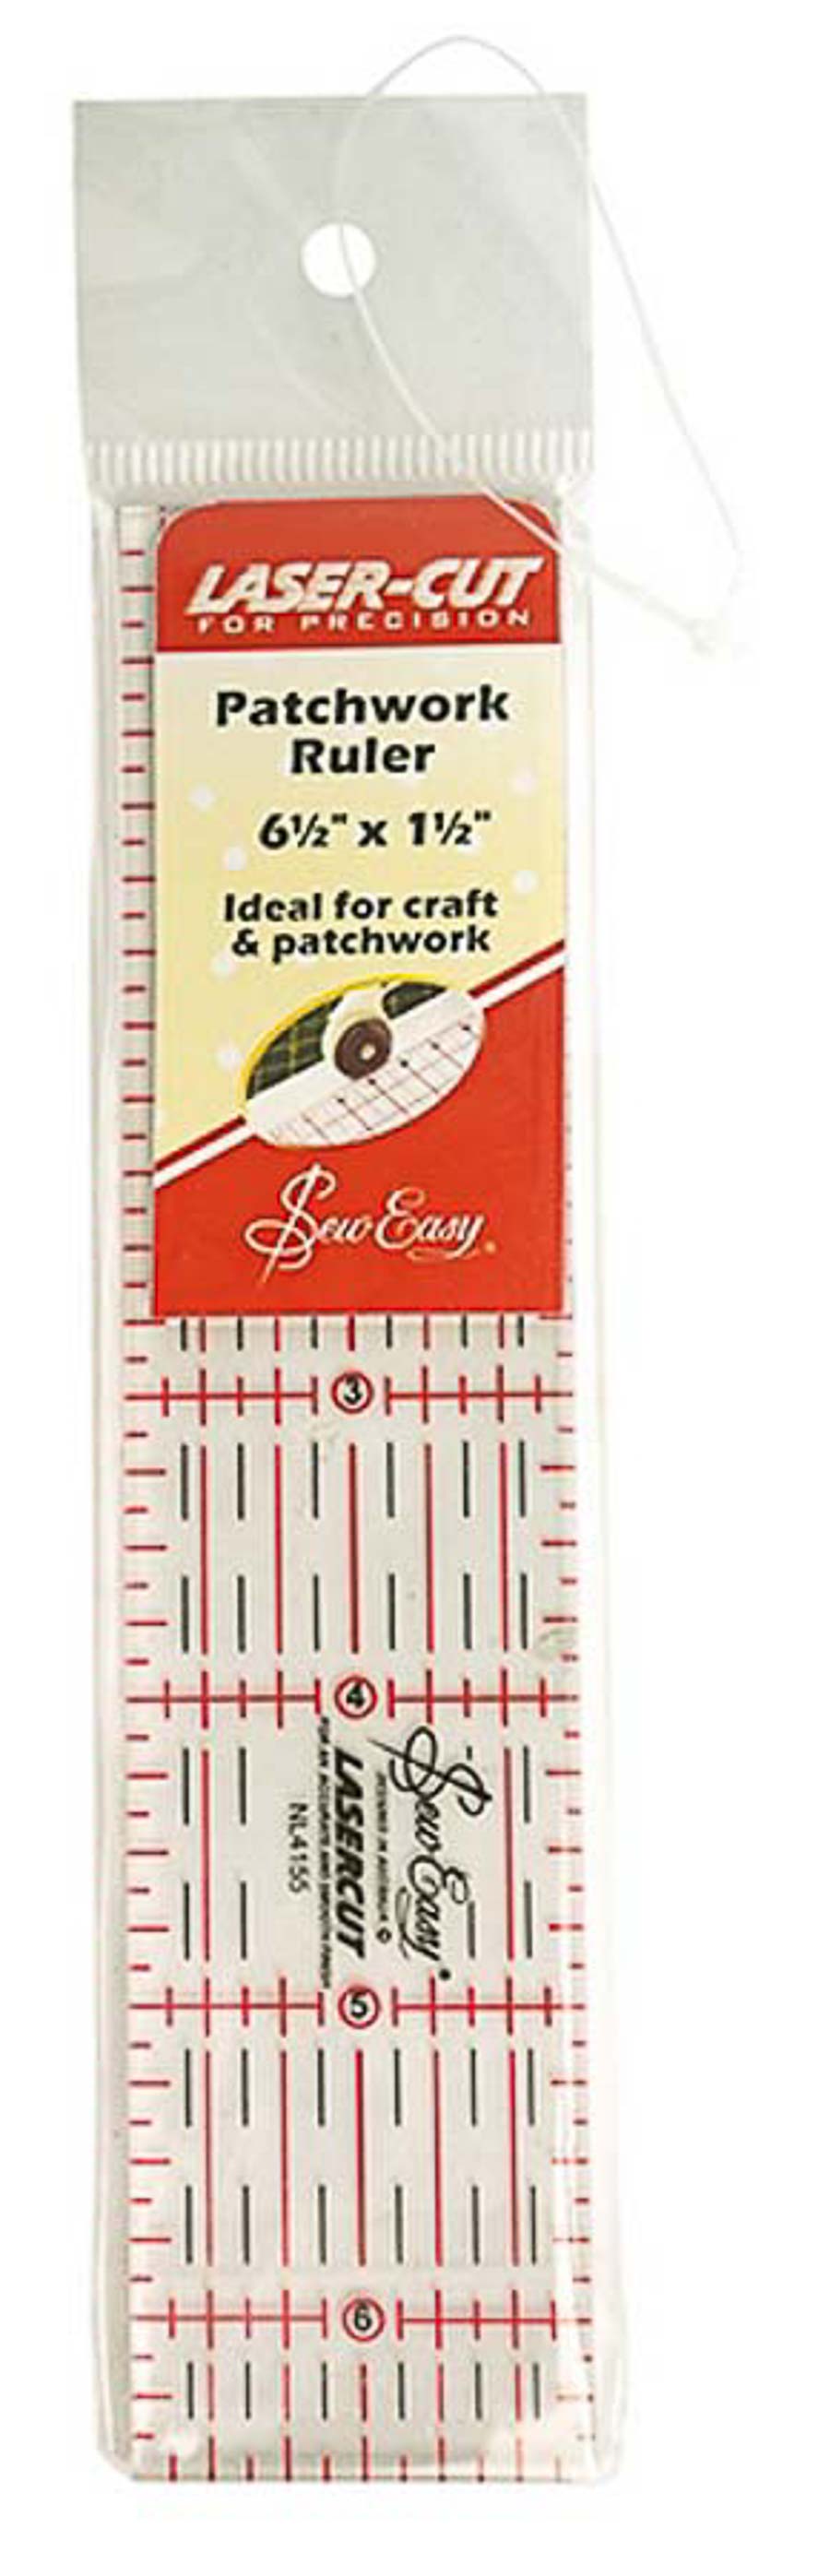 Линейка для квилтинга Sew Easy NL4155 с градацией в дюймах, 6 1/2" х 1 1/2"(Размер: 16,5 х 3,8 см)